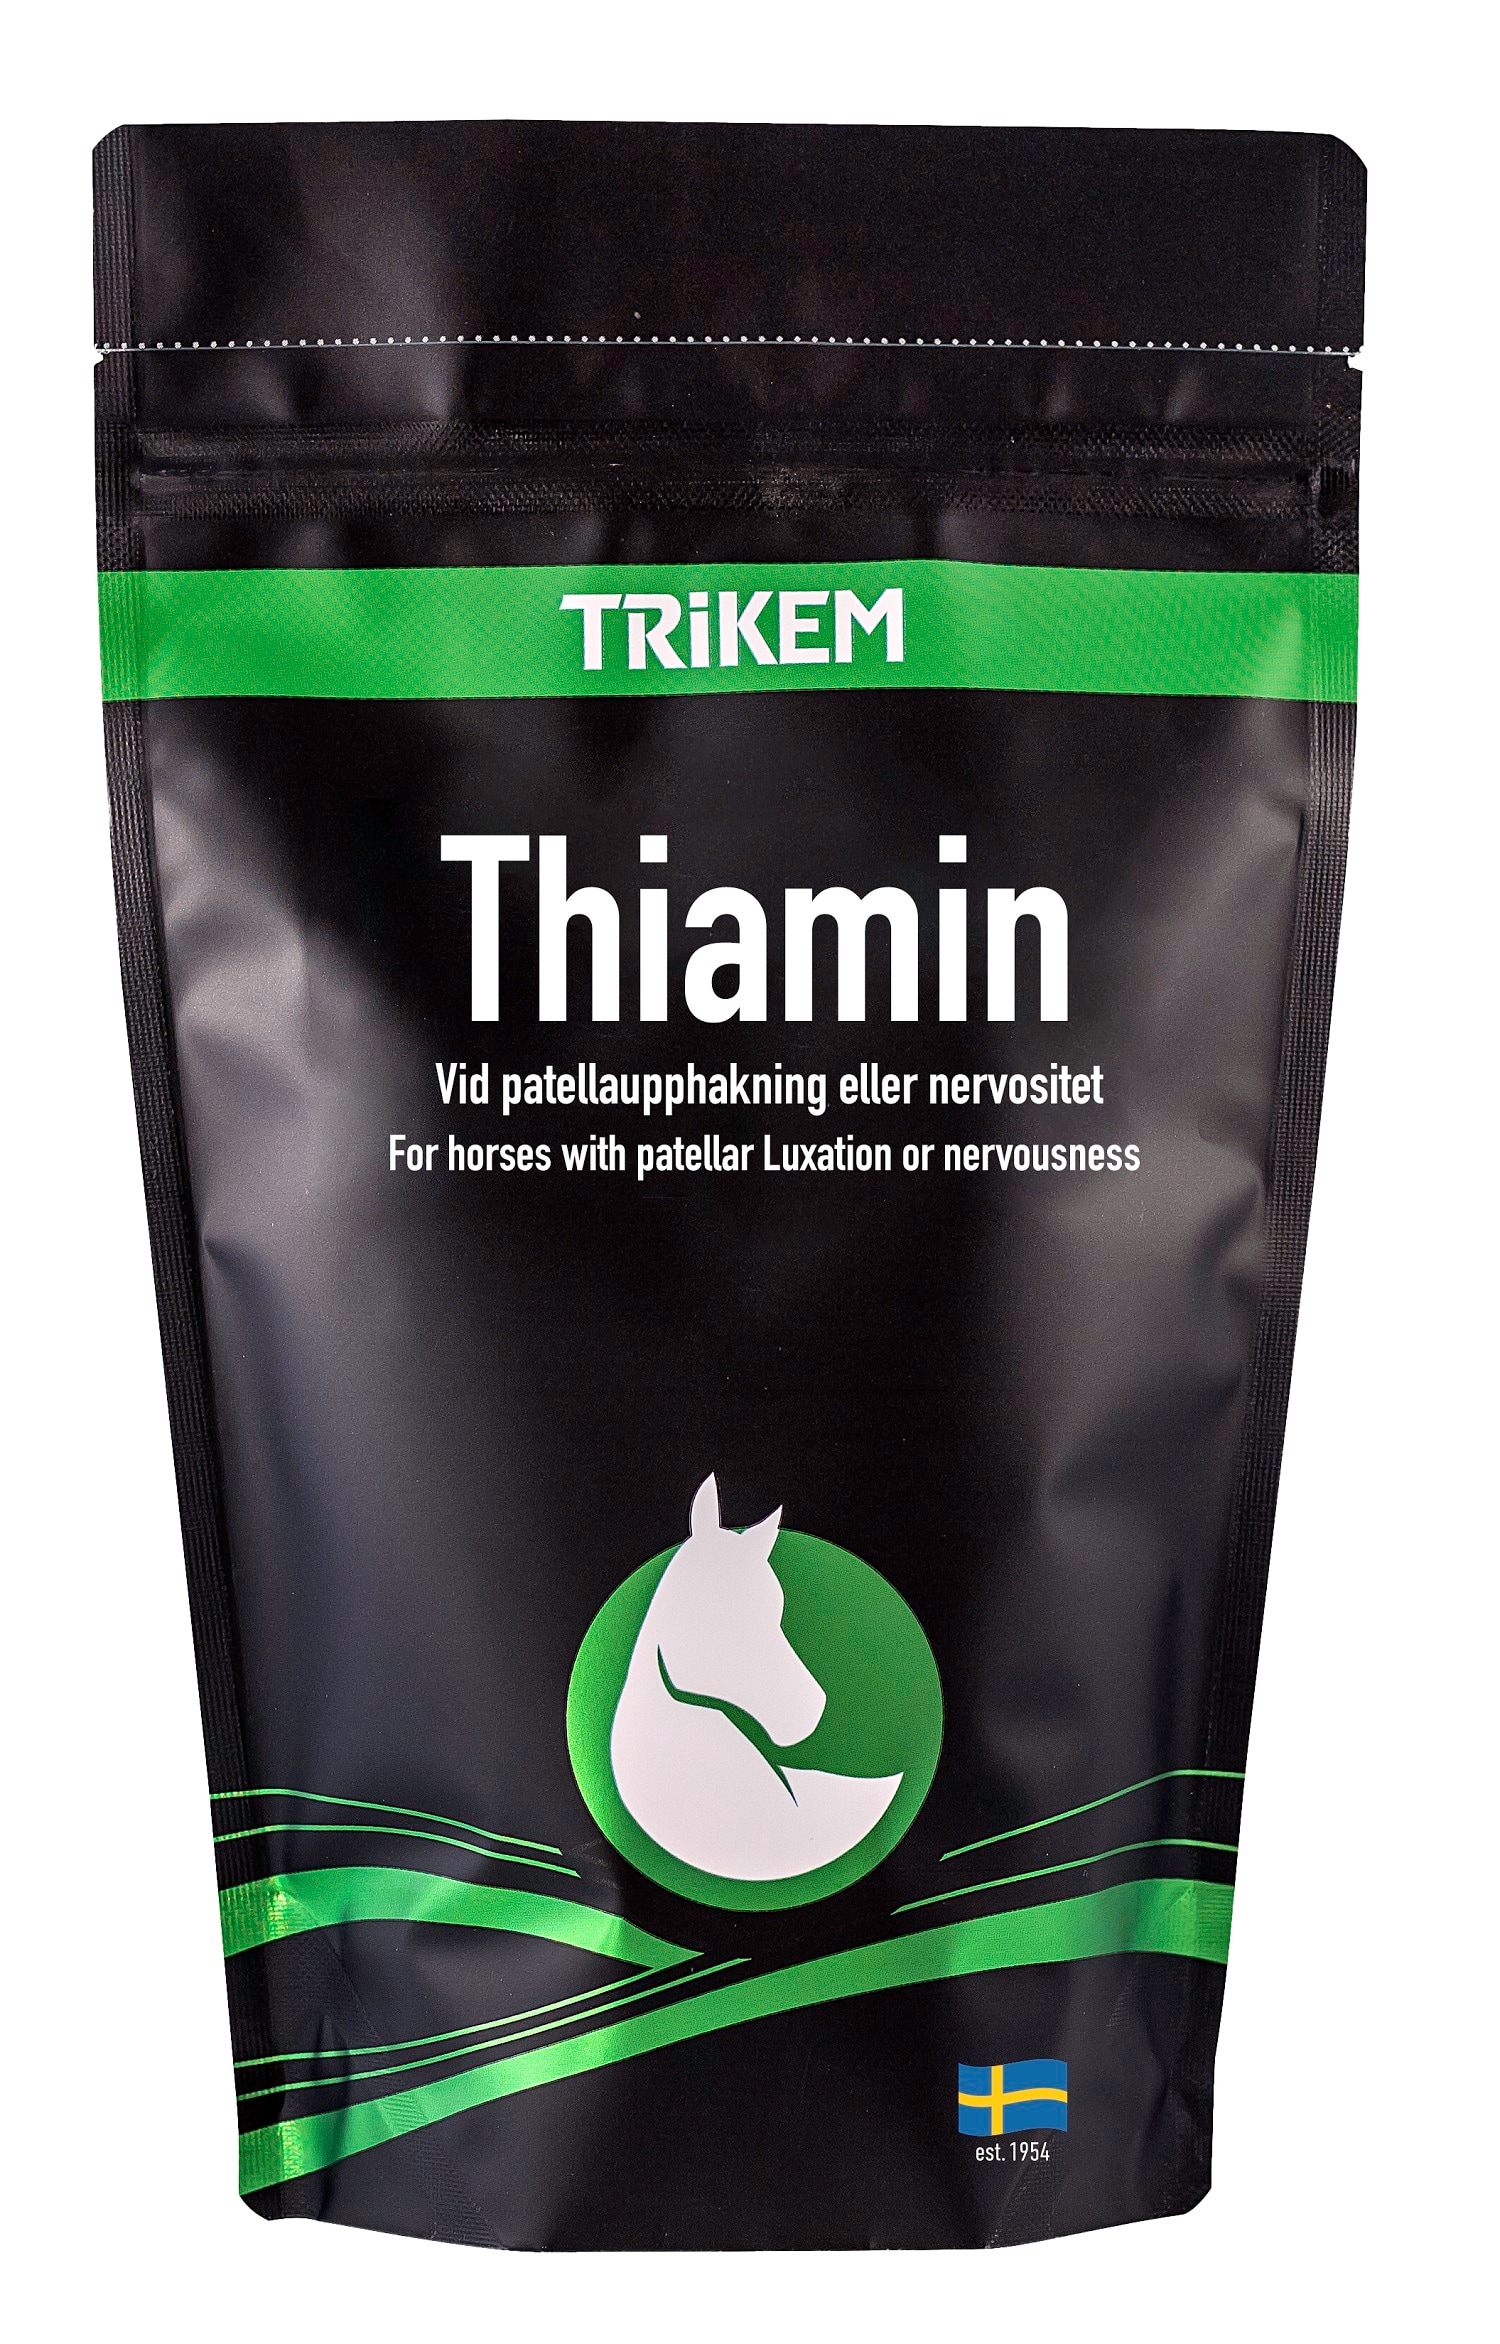 Trikem Thiamin, 500 g